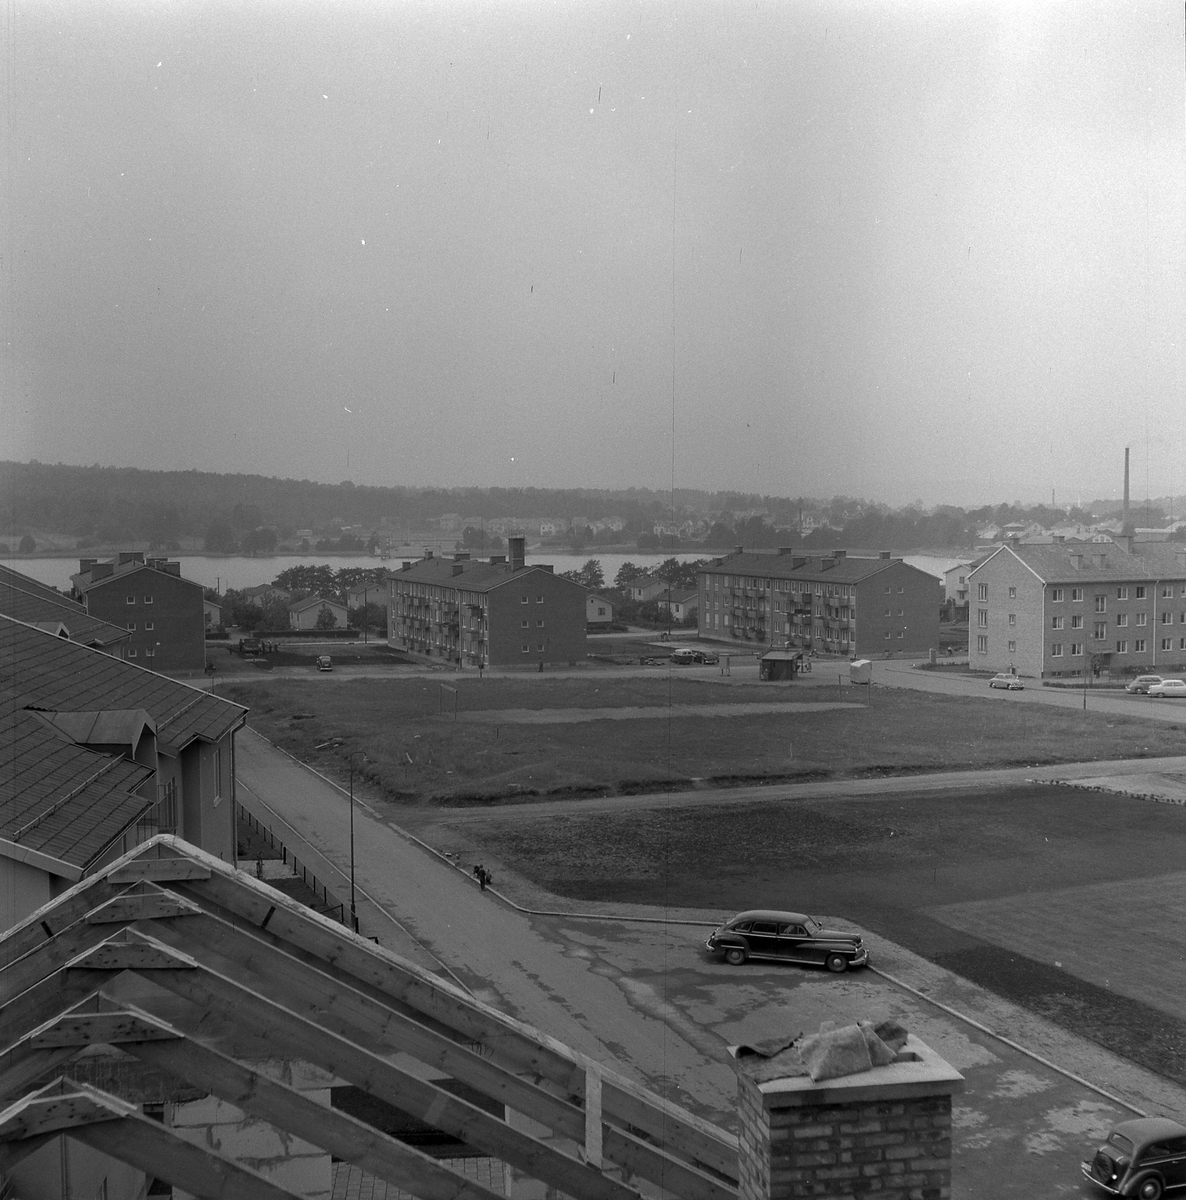 Vy från kv Stadsarkitekten mot Sjömansvägen och Stockslyckevägen. I bakgrunden syns Gerdsken. 20 sept 1956